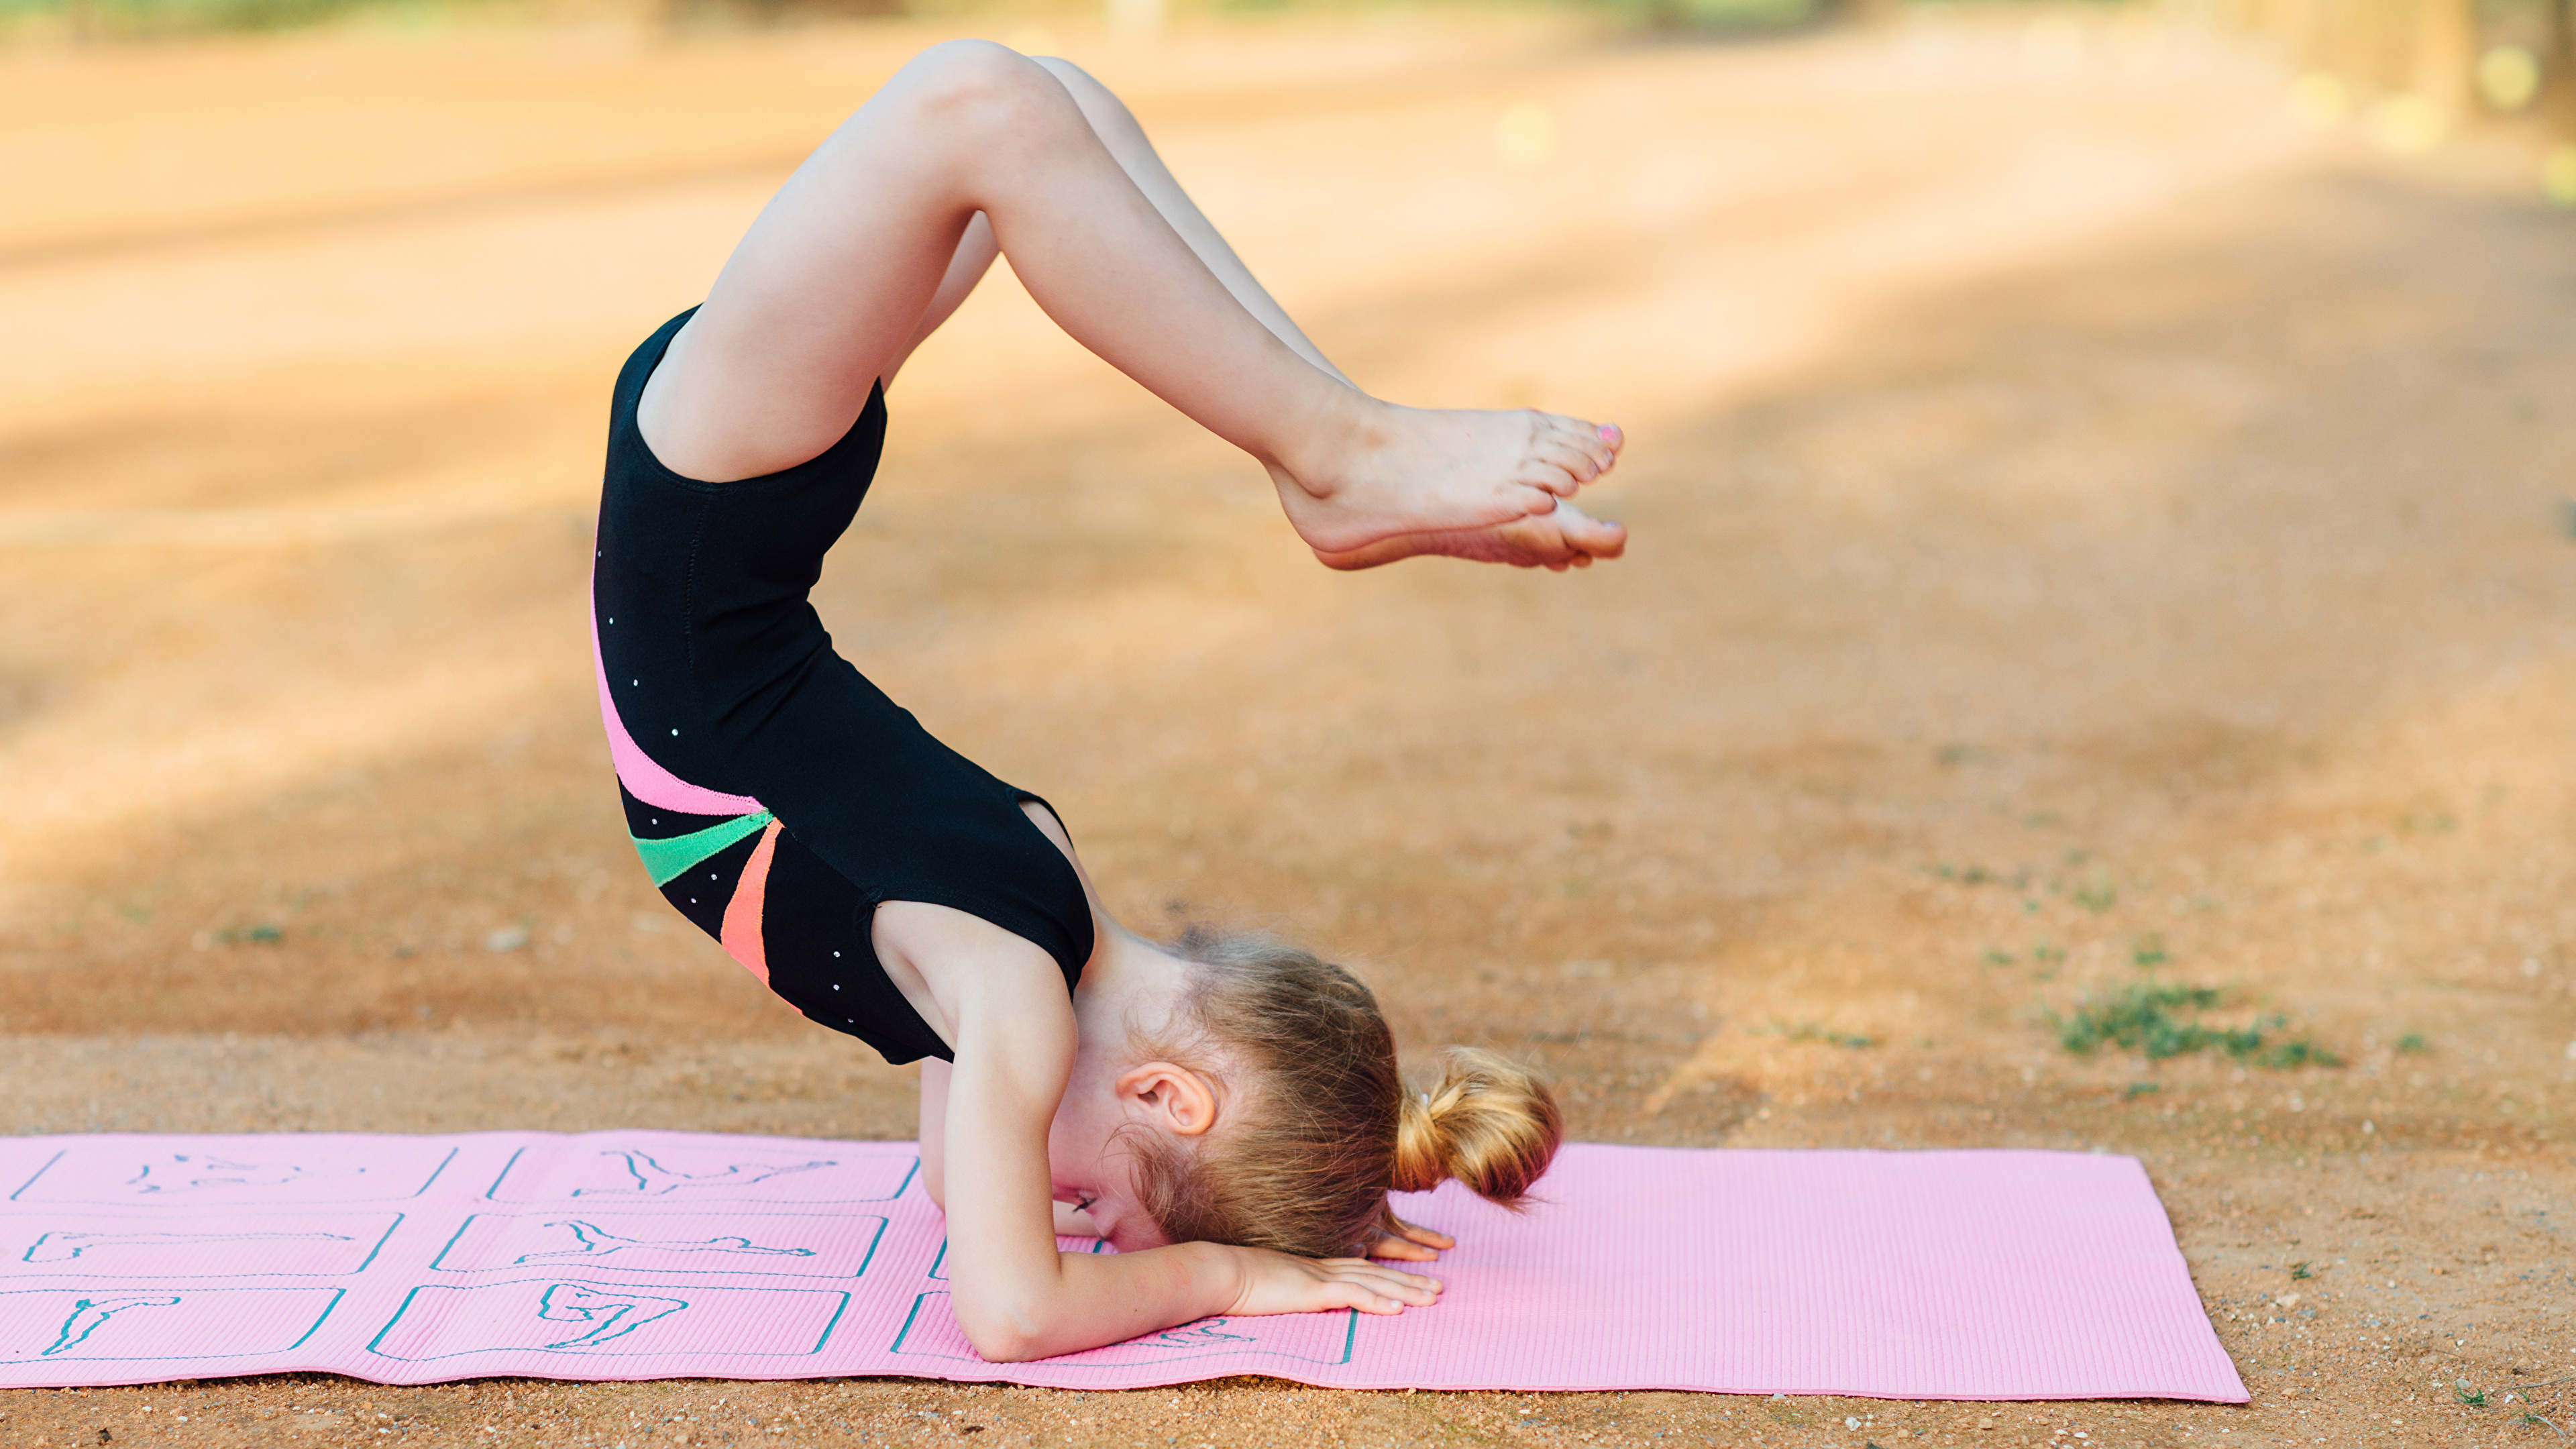 Fotos Von Kleine Mädchen Trainieren Kind Gymnastik Bein 3840x2160 